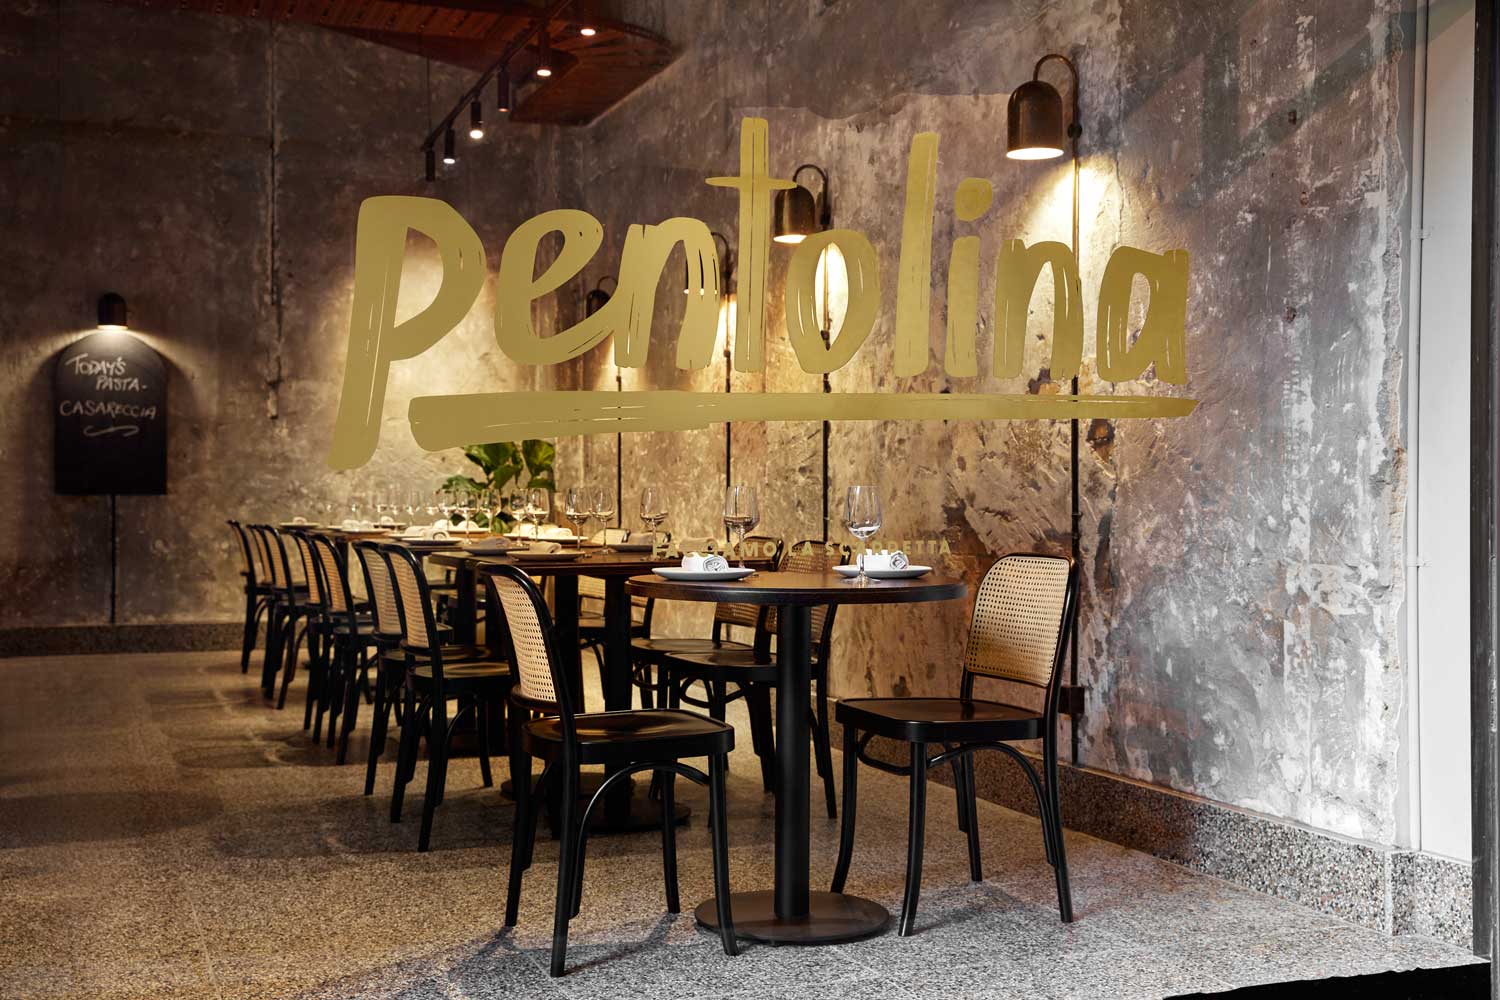 墨尔本PENTOLINA优雅工业风意大利休闲餐厅设计